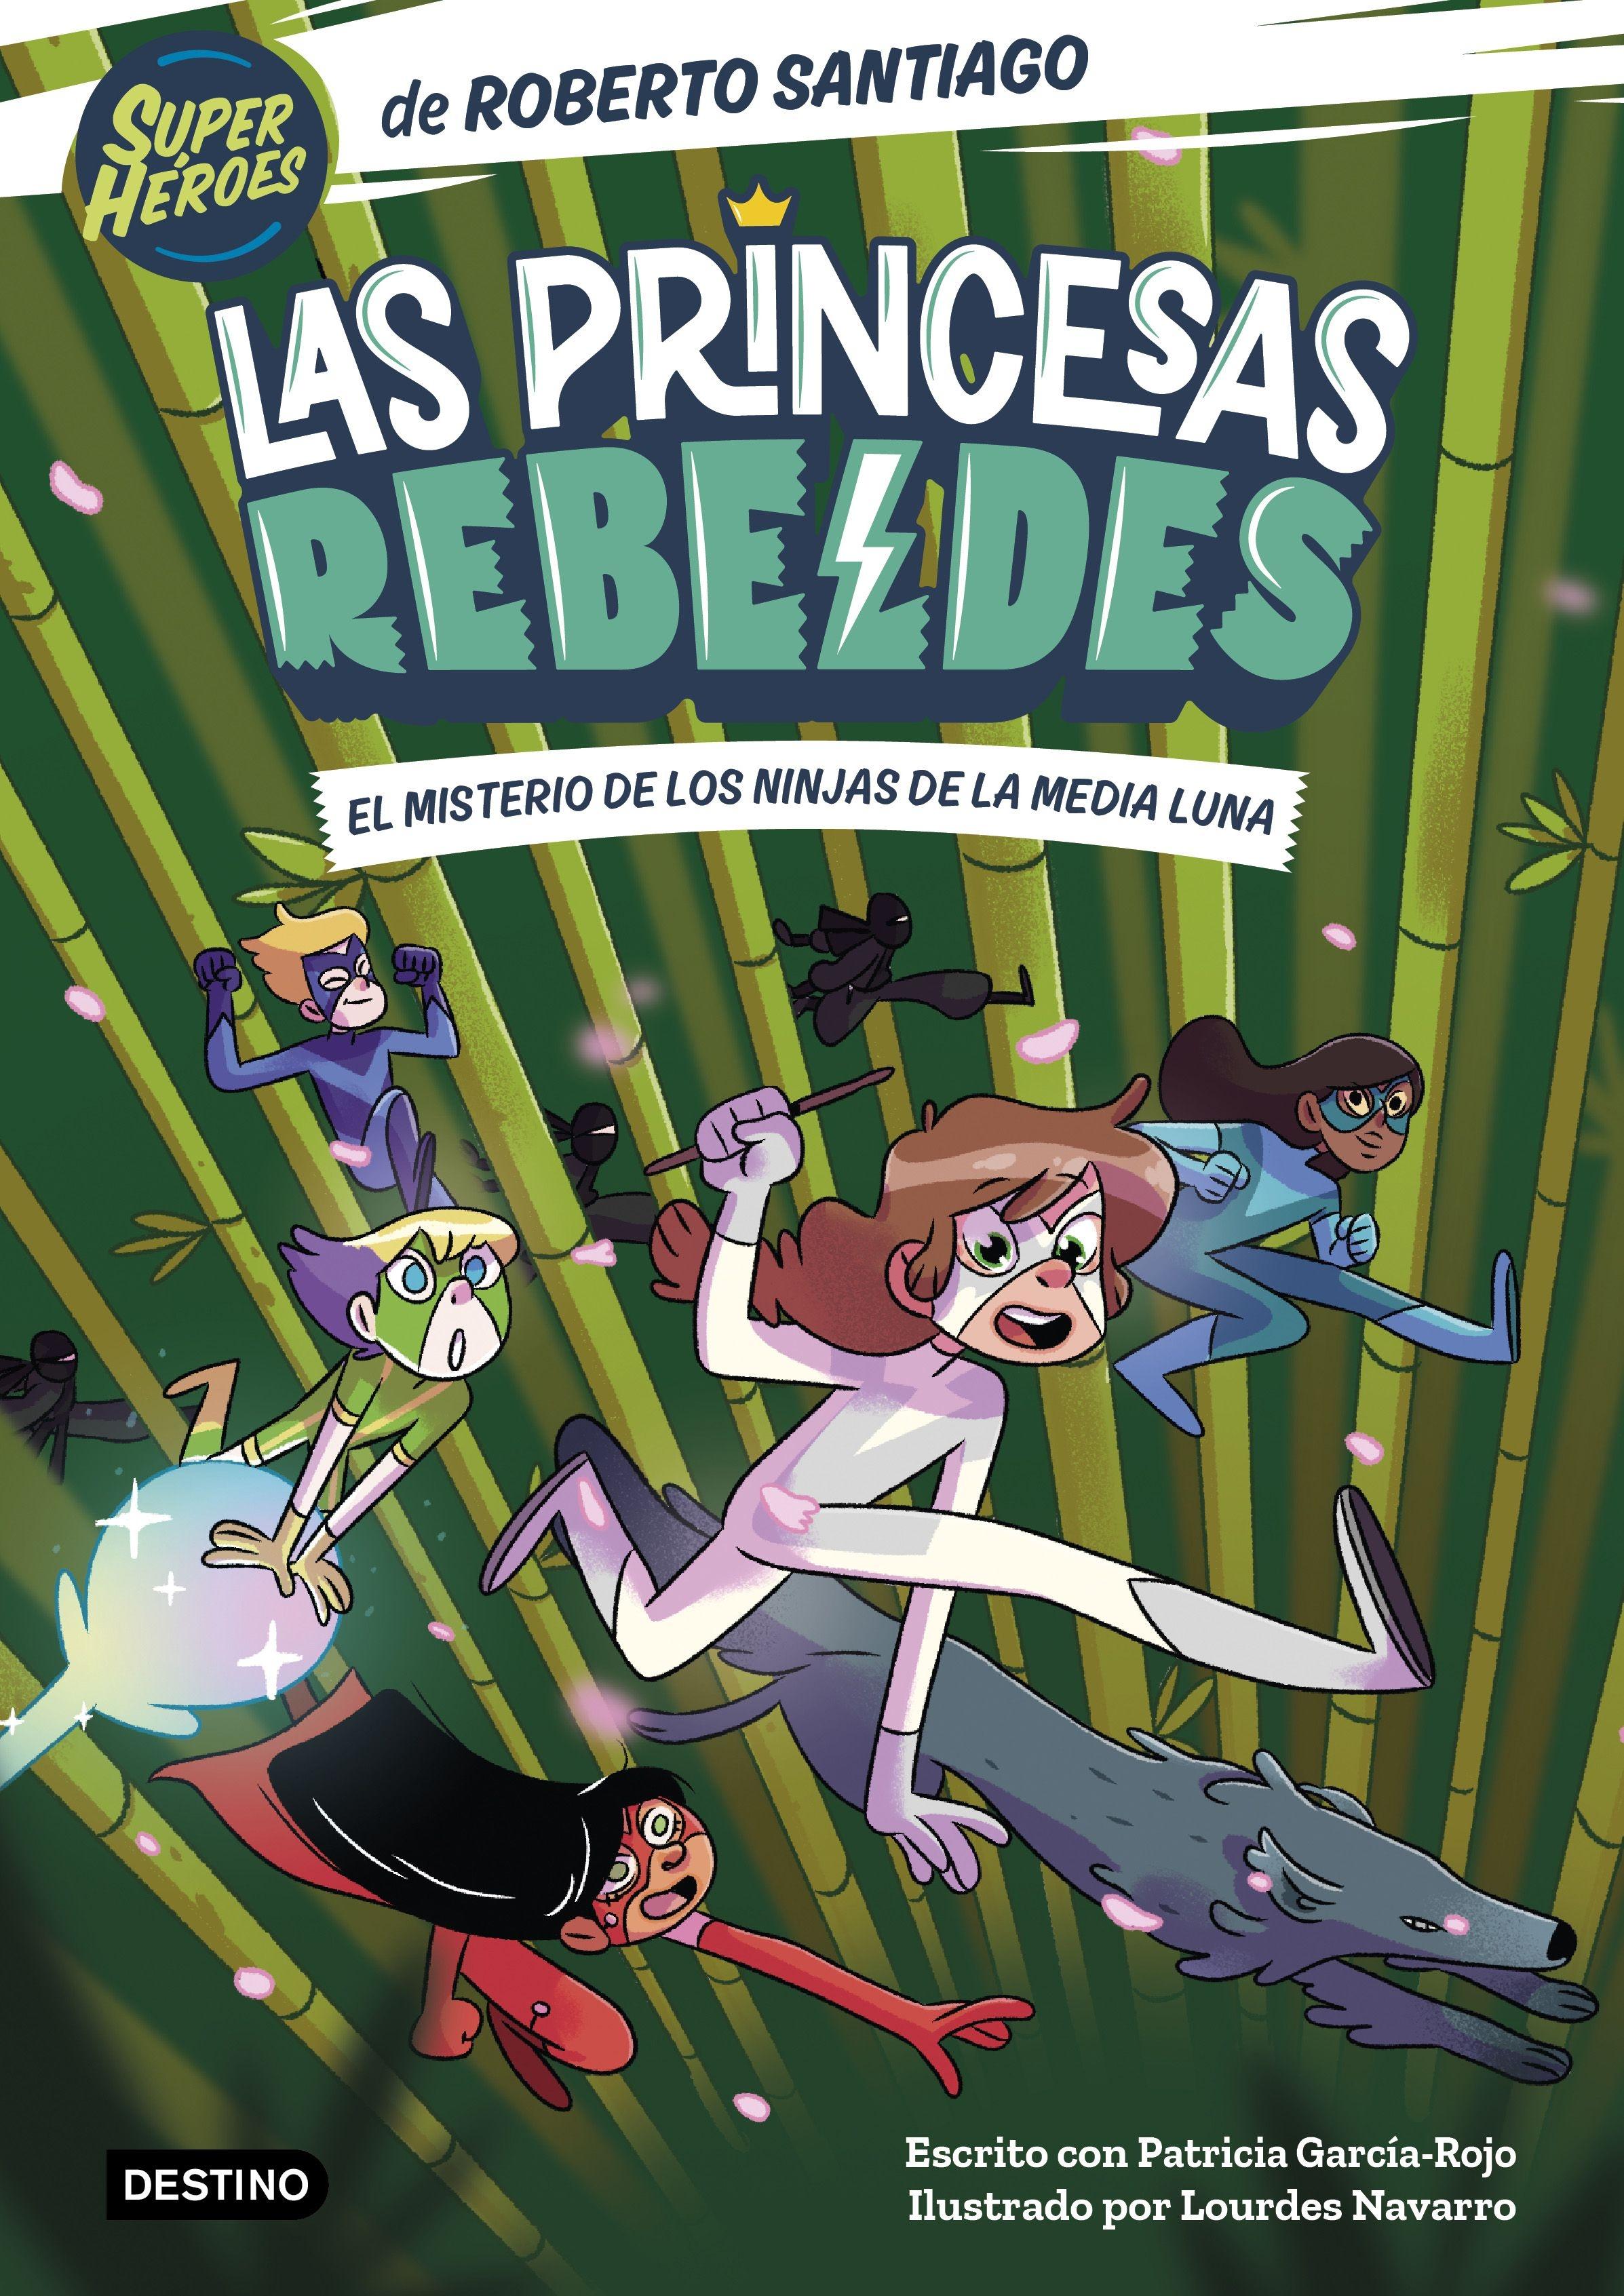 Las Princesas Rebeldes 3 "El Misterio de los Ninjas de la Media Luna"